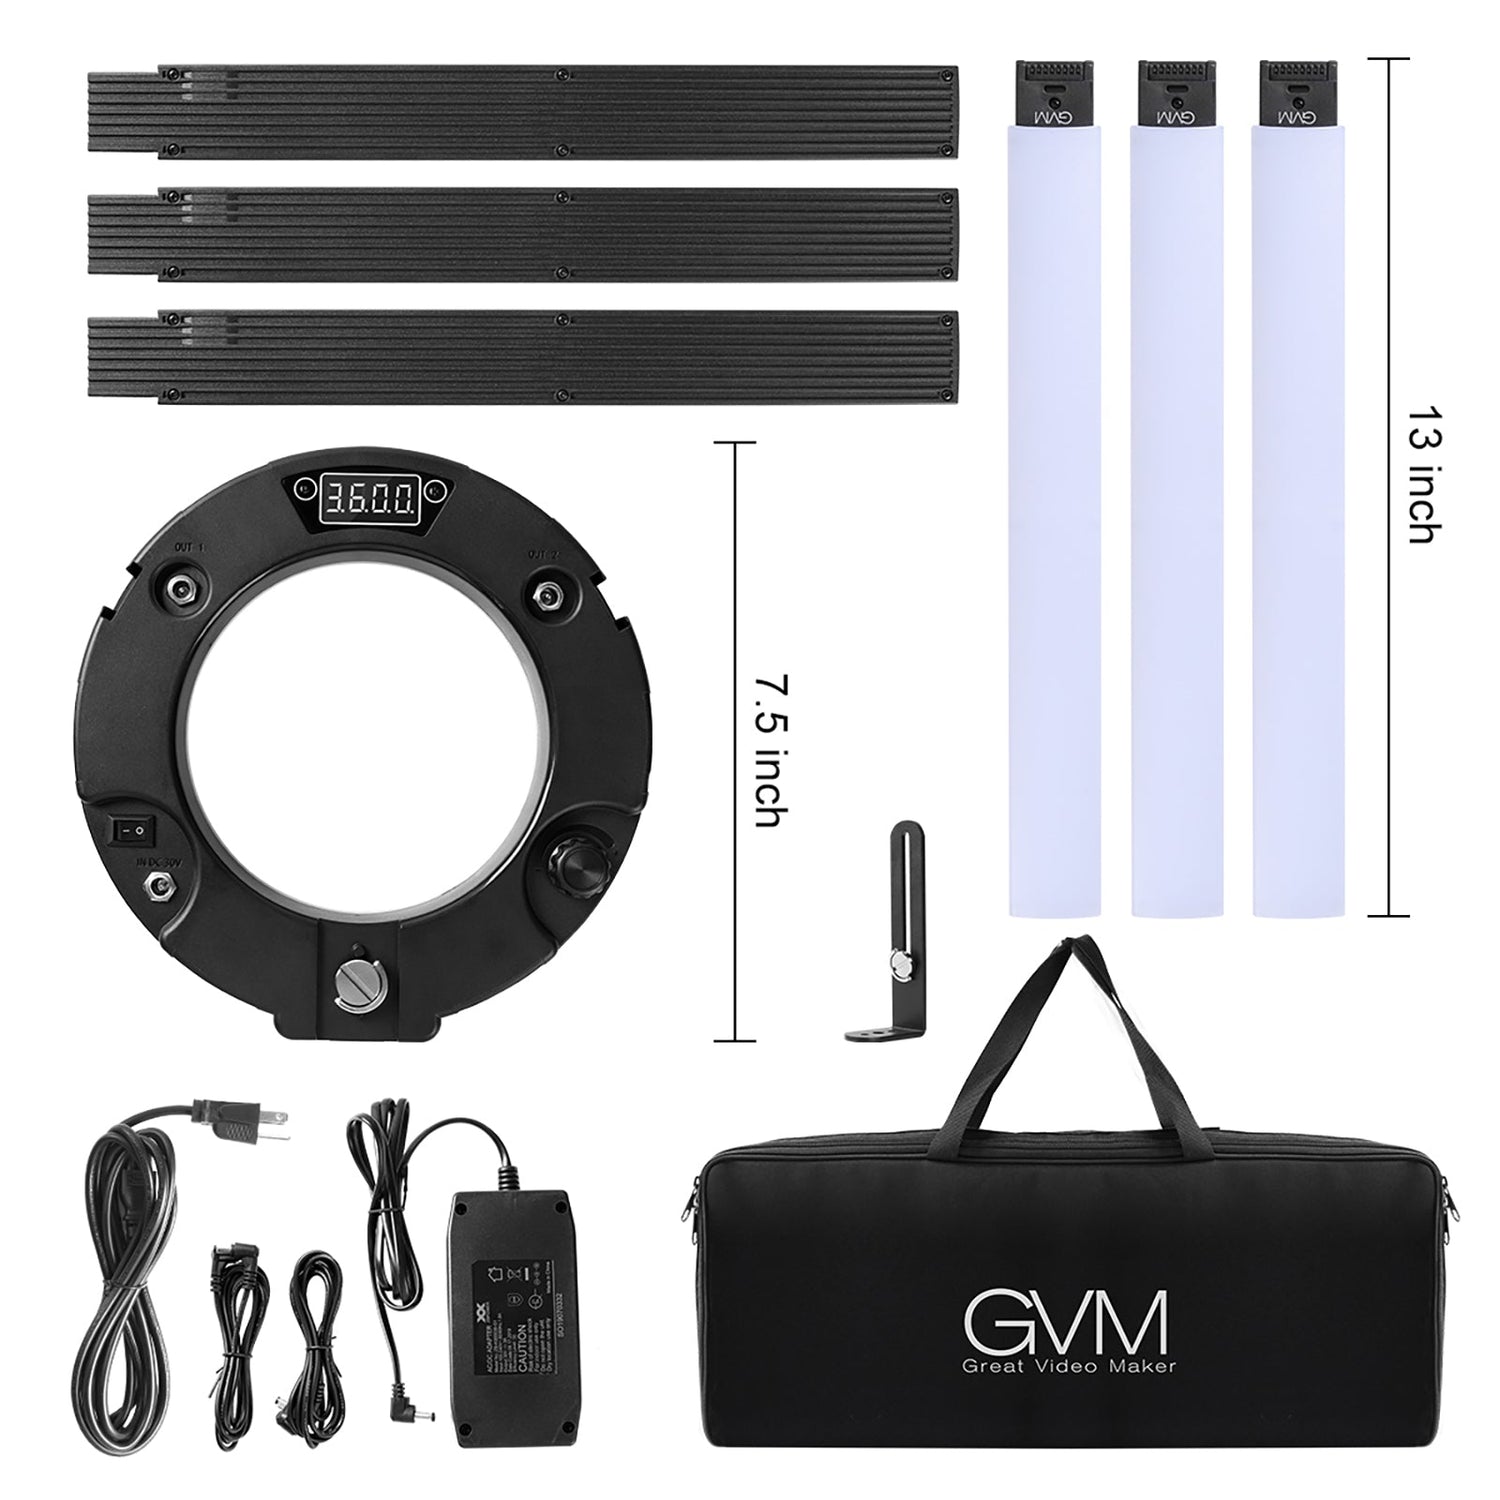 GVM-60W High Power Bi-Color LED Ring Light Kit - GVMLED